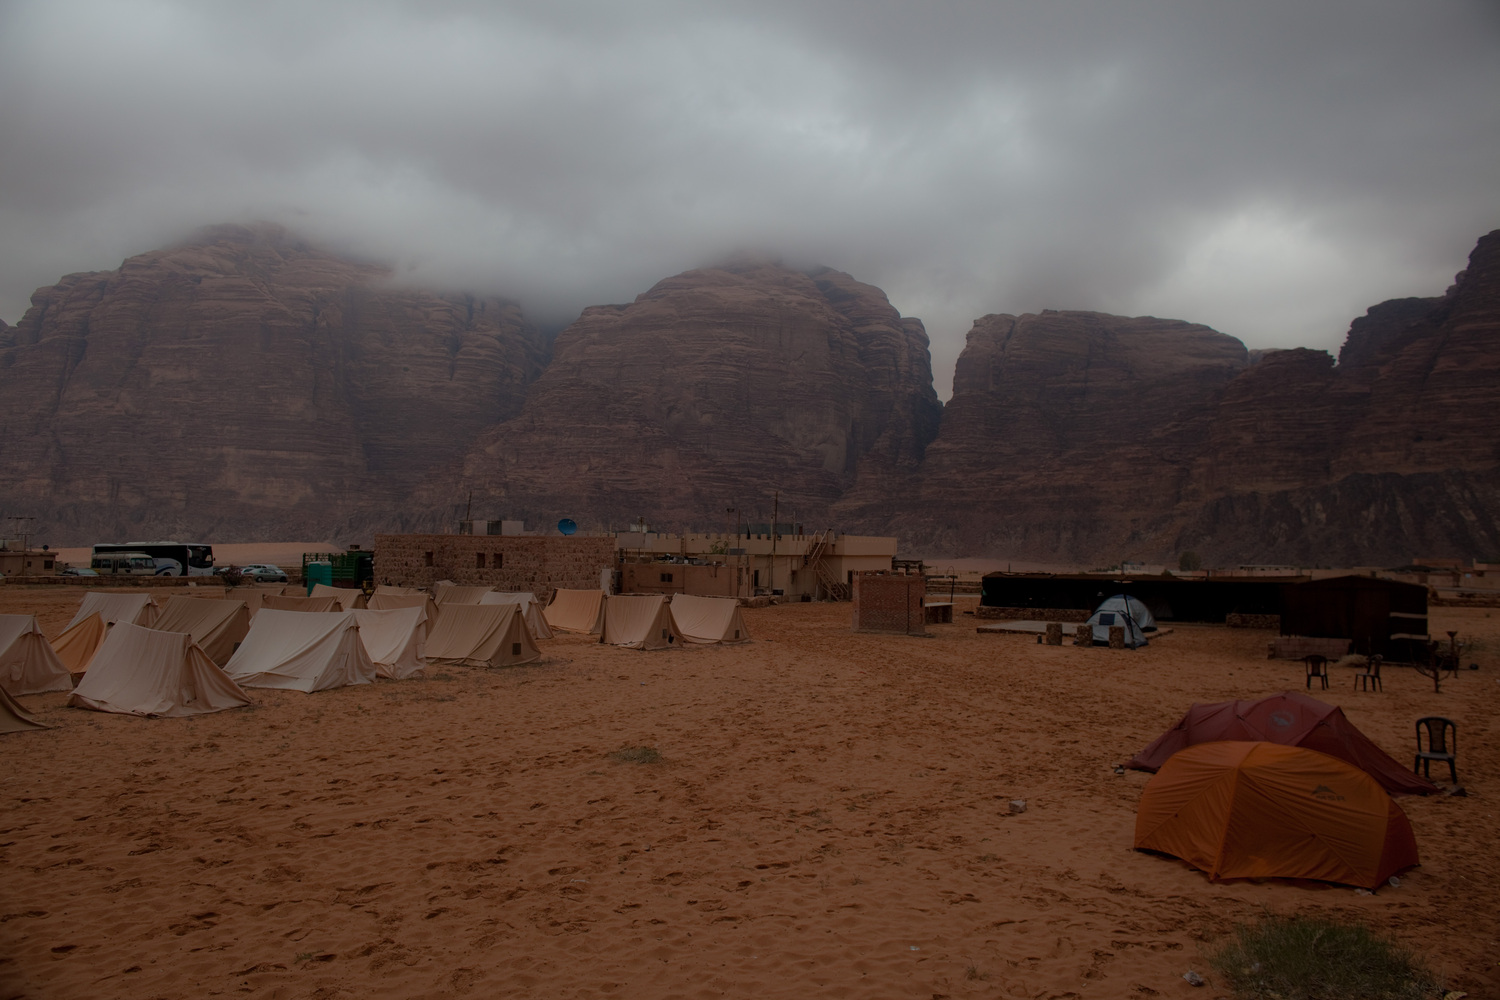 Иордания, кемпинг в Rum Village в пустыне Wadi Rum. Наши палатки - справа на переднем плане, слева и подальше - стационарные палатки, принадлежащие кемпингу.